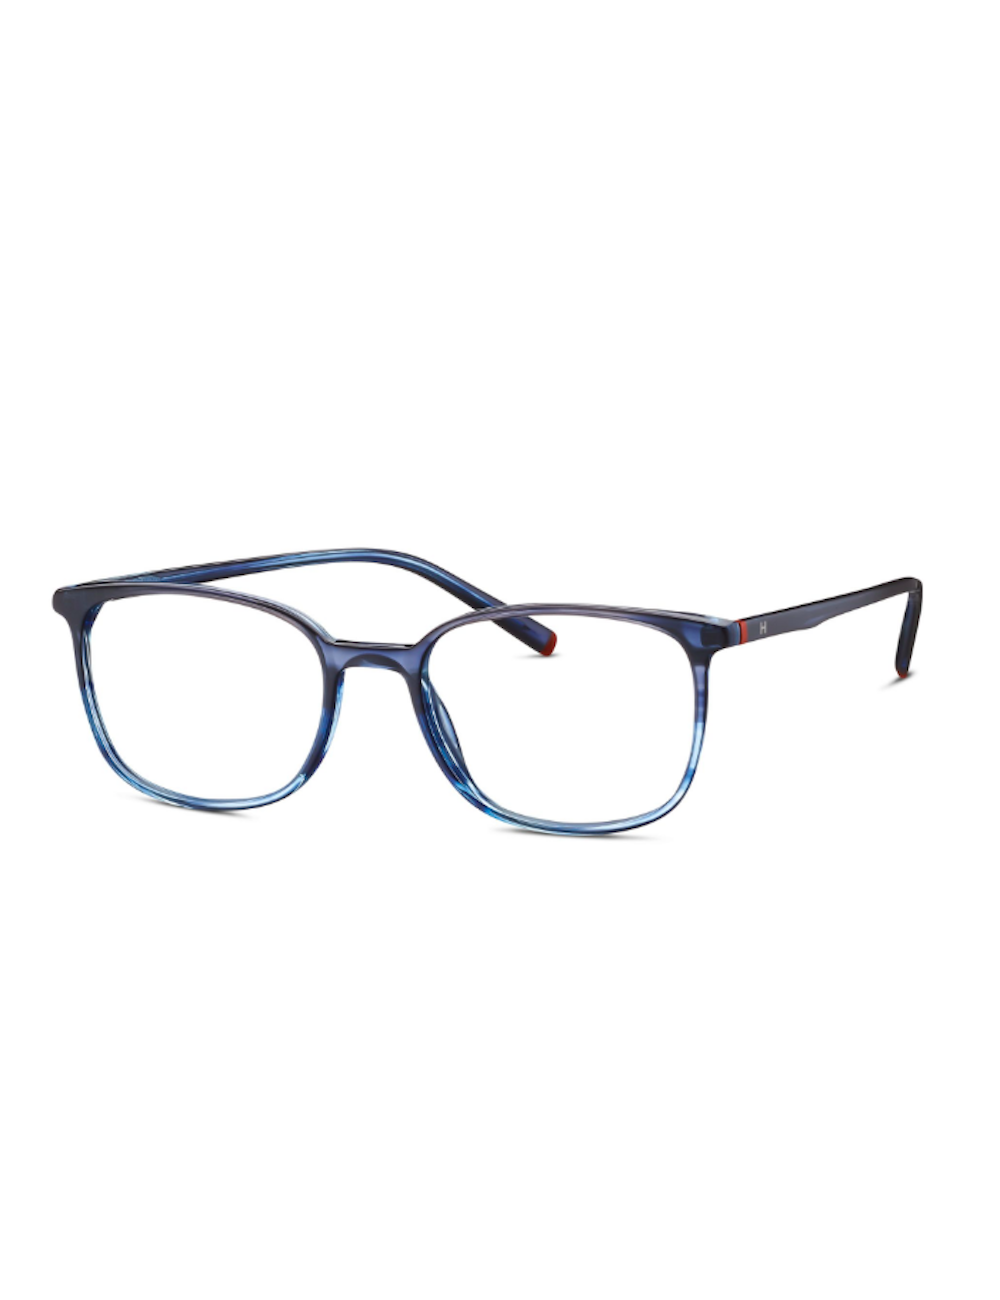 Humphrey's eyewear 583128 70 acetate square eyeglasses –